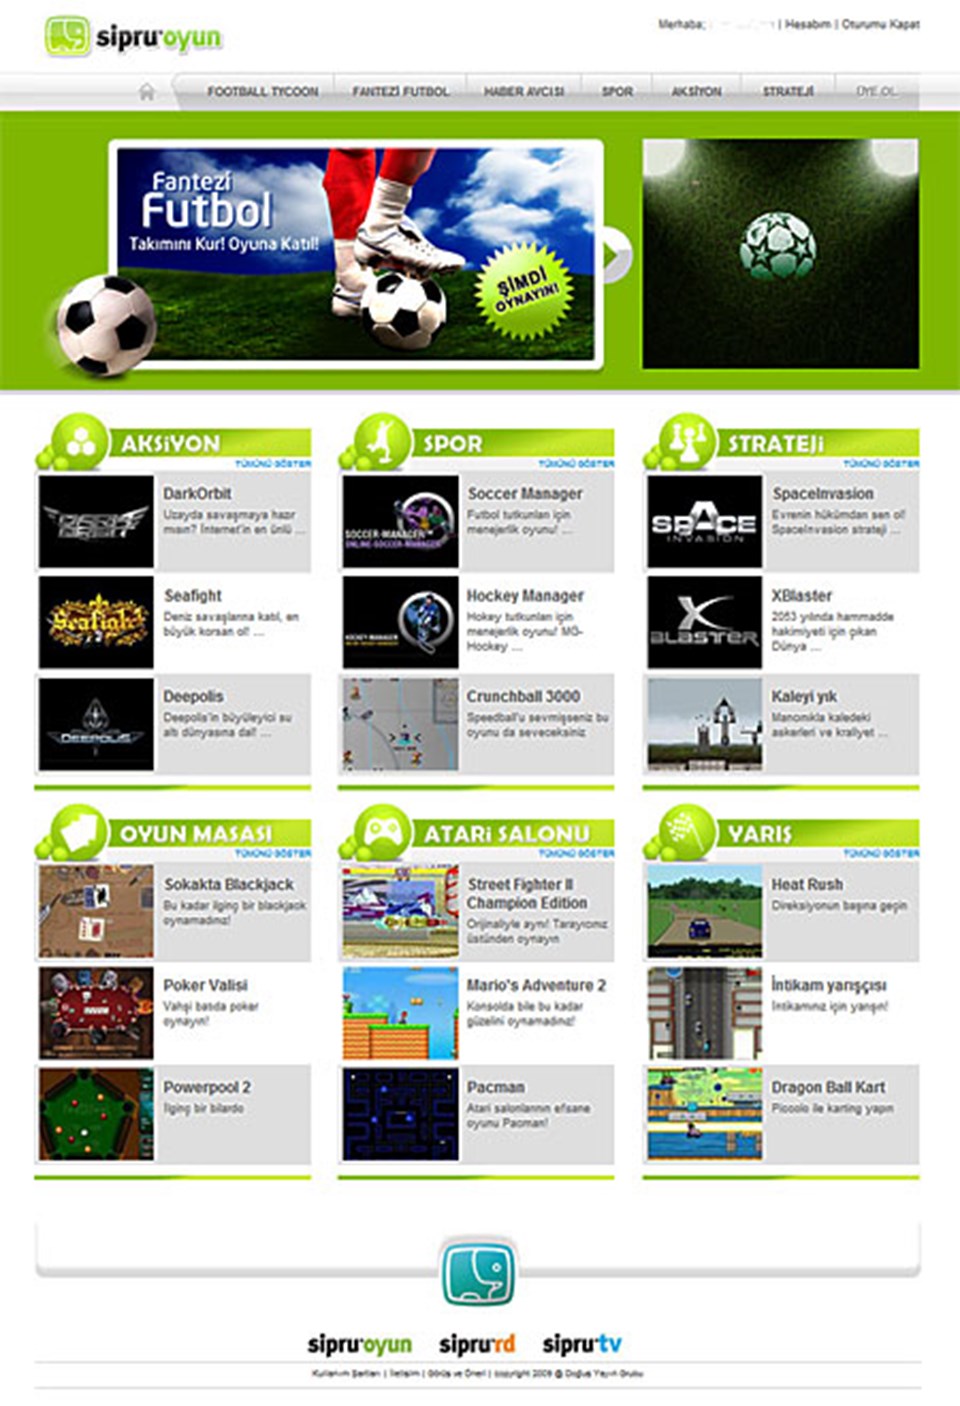 sipruoyun.com'da 150'den fazla çevrimiçi oyun bulunuyor. Siteye gitmek için resme tıklayın.